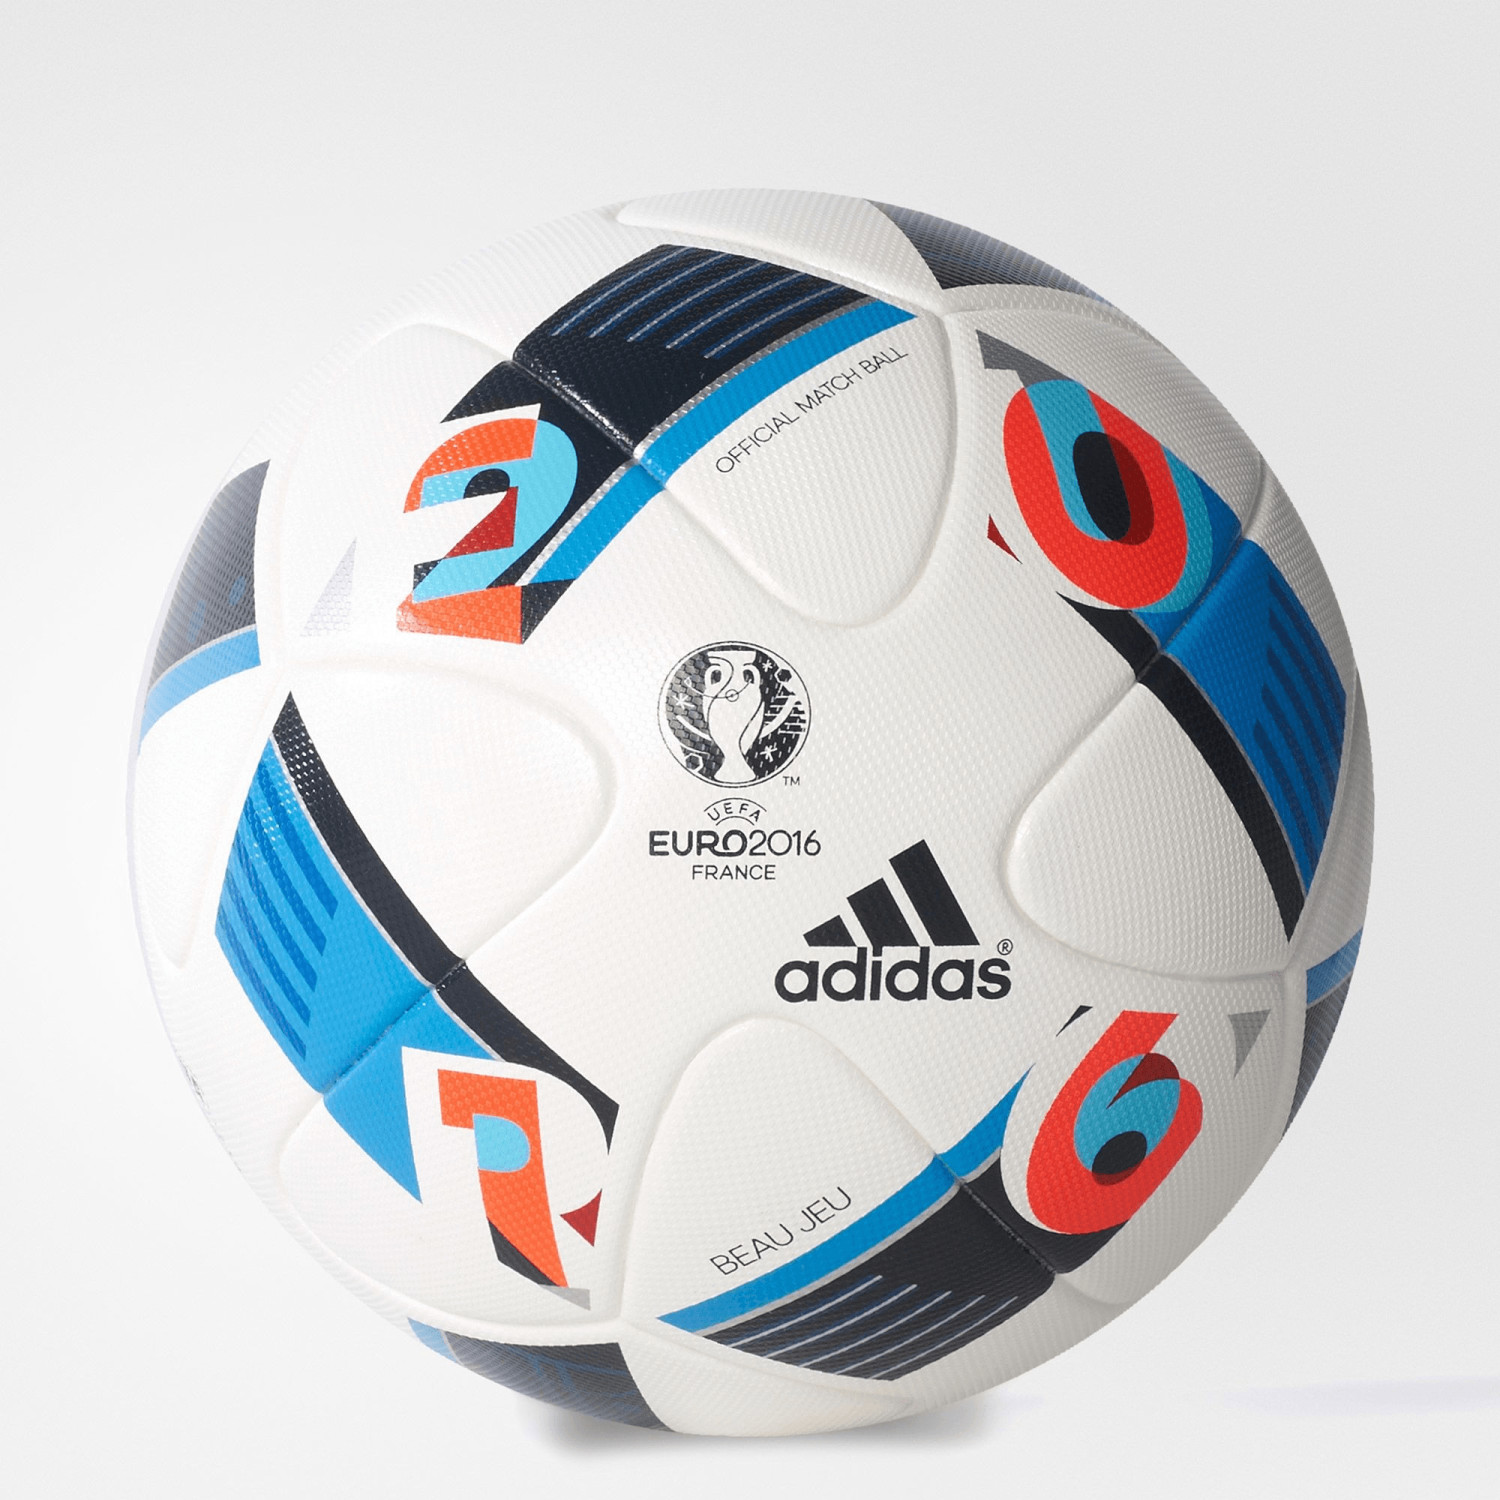 Adidas Pallone UEFA Euro 2016